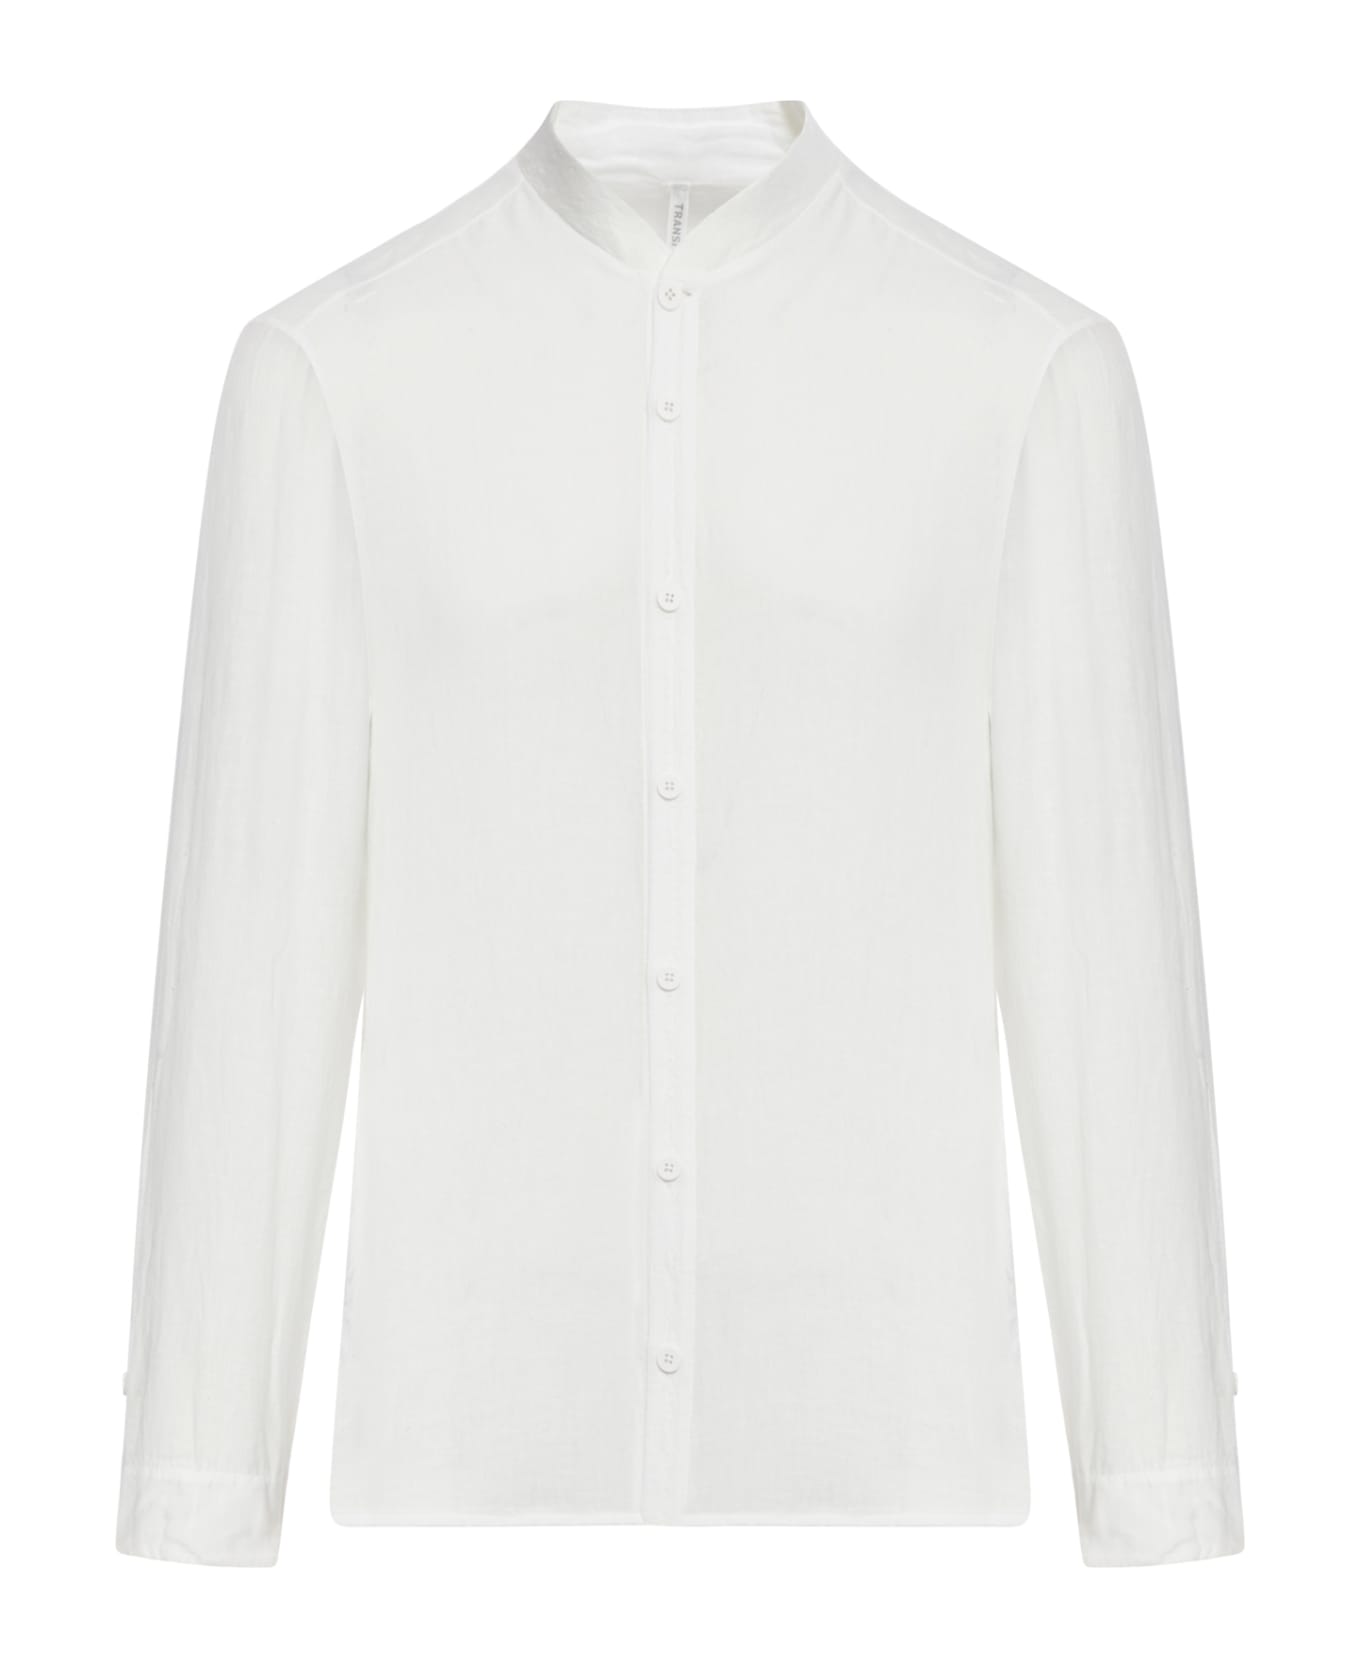 Transit Shirt - Optical White